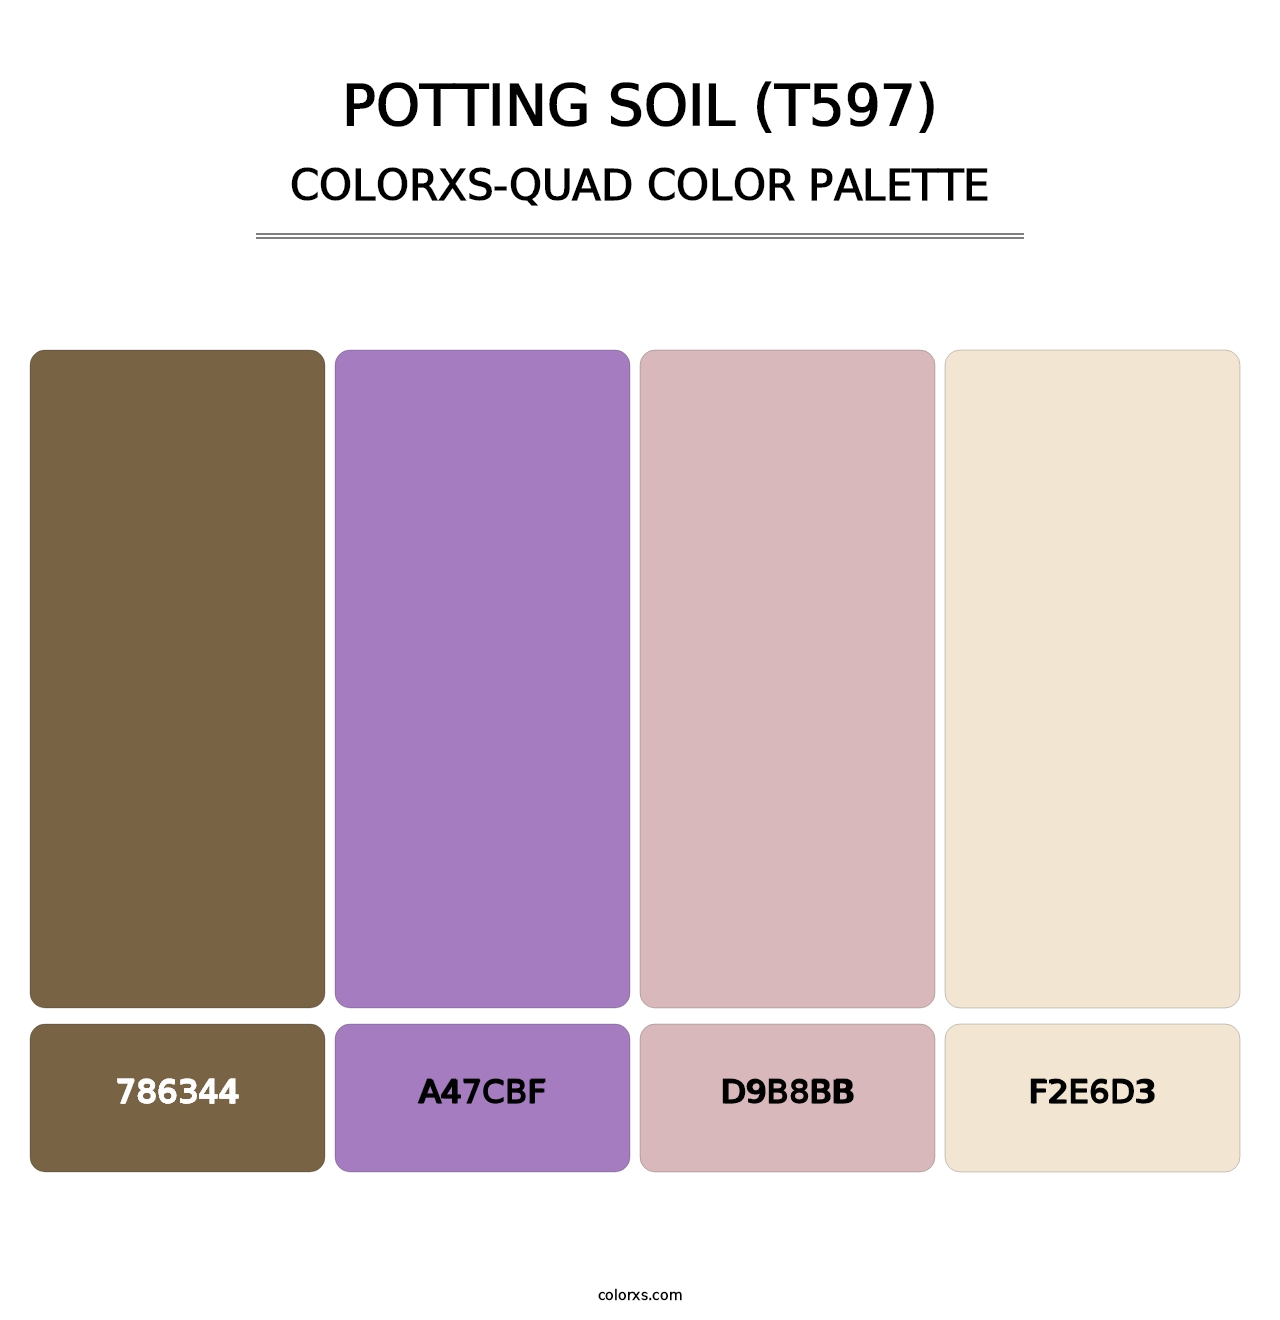 Potting Soil (T597) - Colorxs Quad Palette